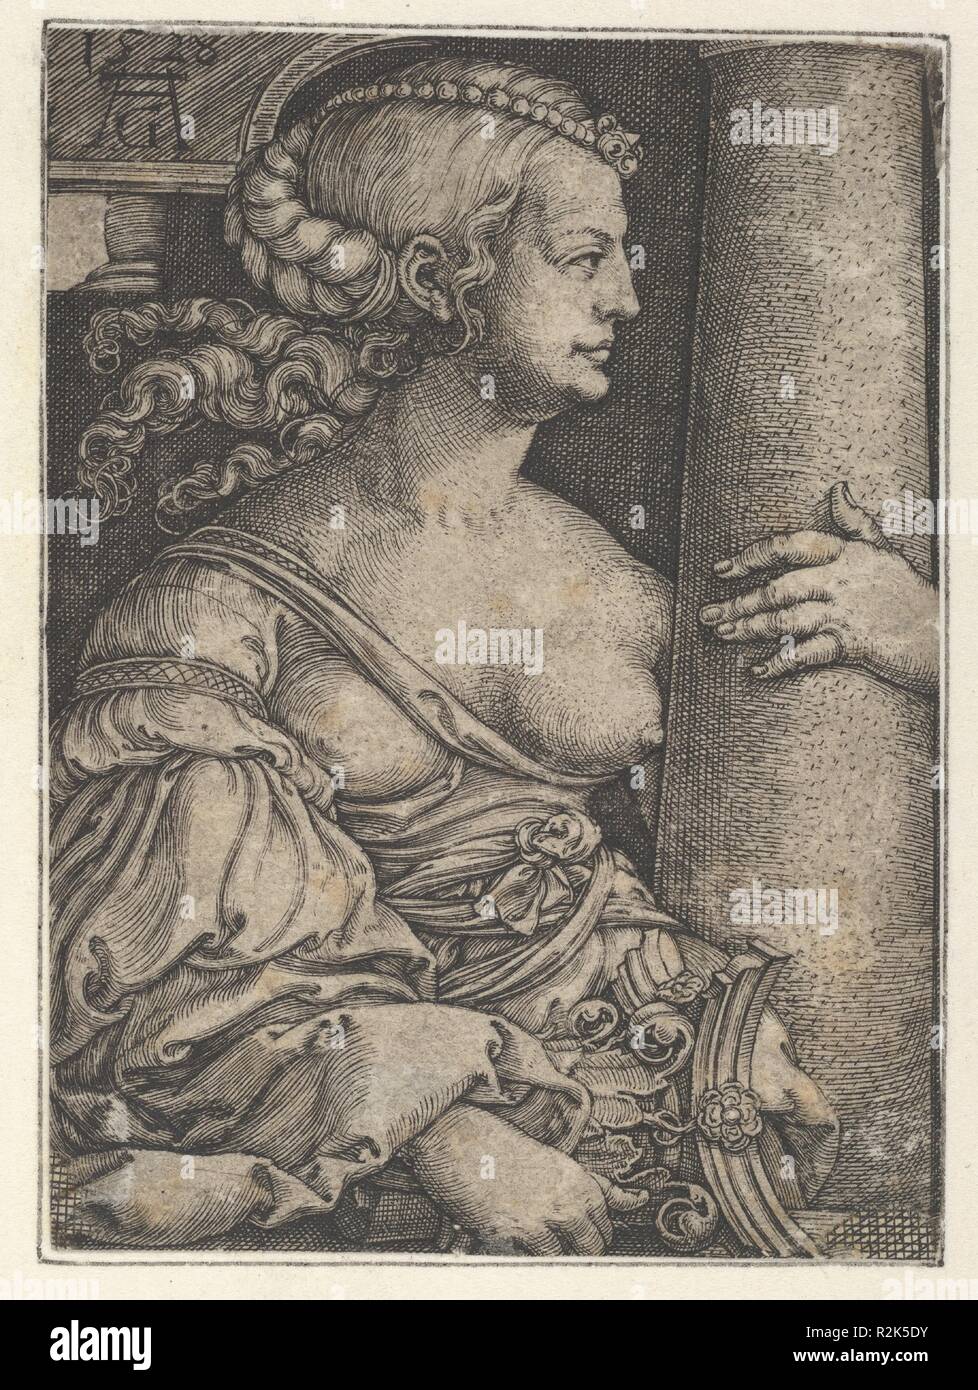 La fuerza. Artista: Heinrich Aldegrever (alemán, Paderborn ca. 1502-1555/1561 Soest). Dimensiones: hoja recortada (15/16): 2 × 2 3/16 in. (7,5 × 5,5 cm). Fecha: 1528. Museo: Museo Metropolitano de Arte, Nueva York, Estados Unidos. Foto de stock